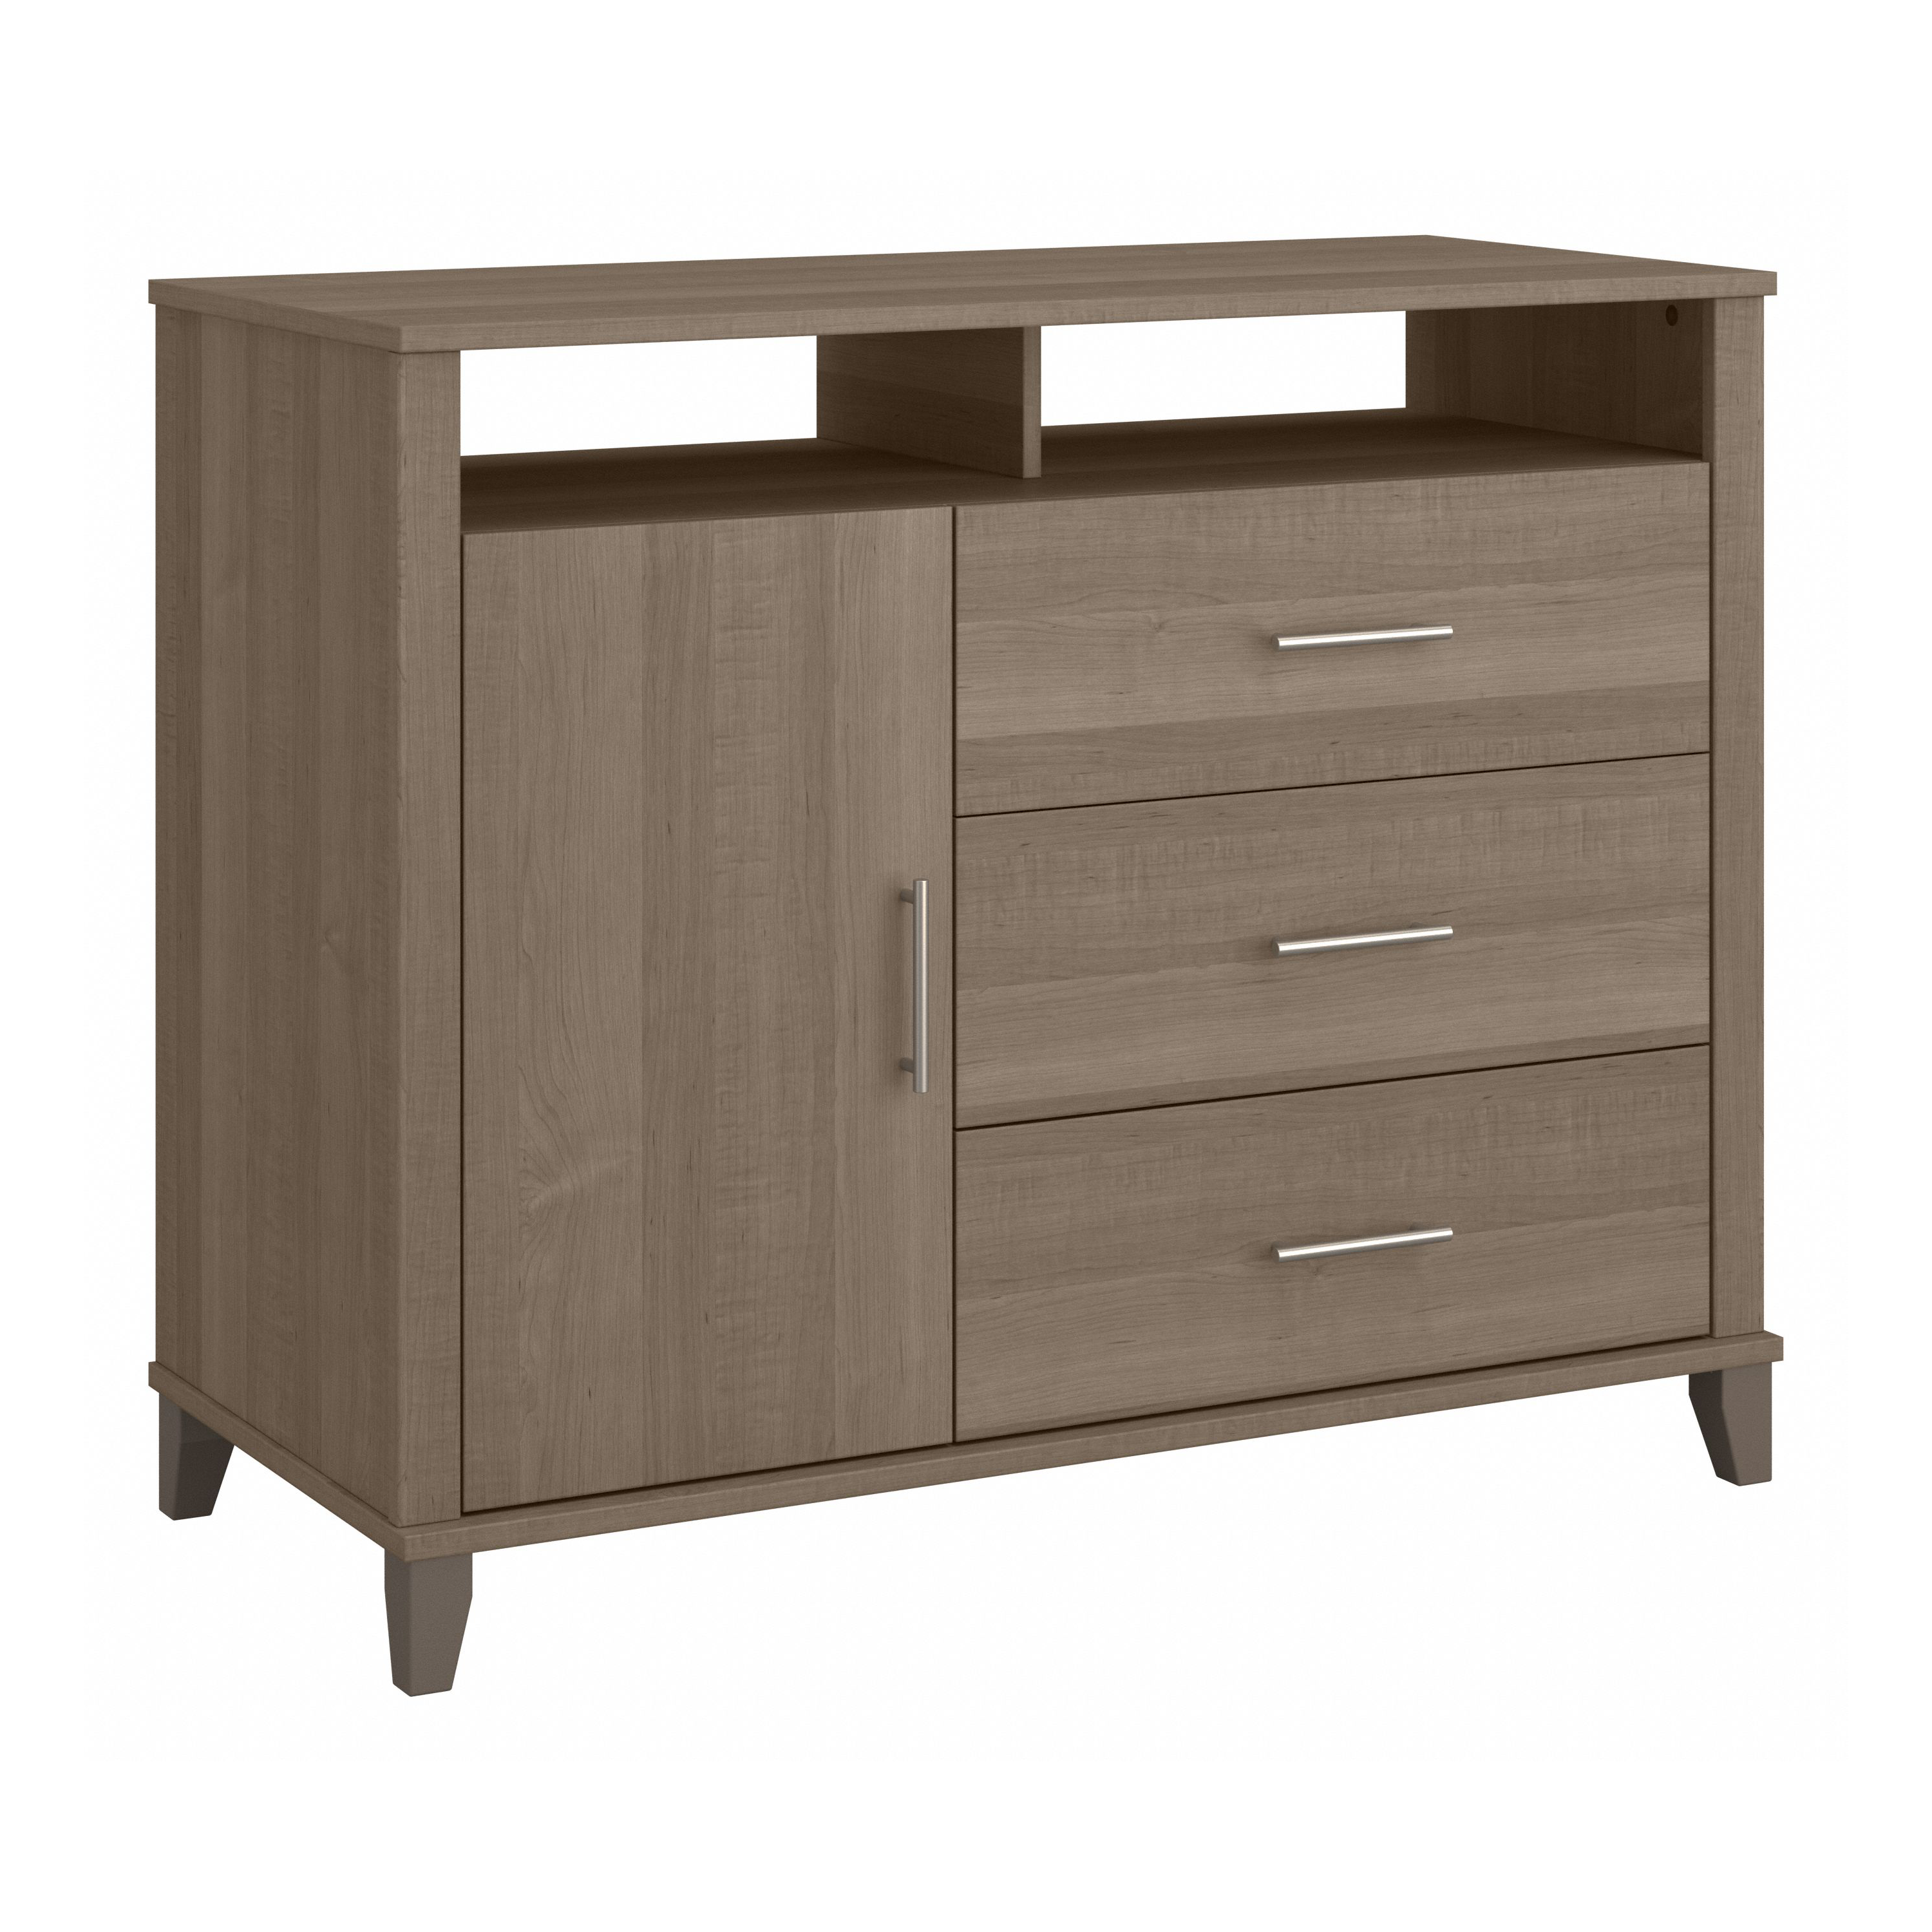 Shop Bush Furniture Somerset 3 Drawer Dresser and Bedroom TV Stand 02 STV148AGK #color_ash gray